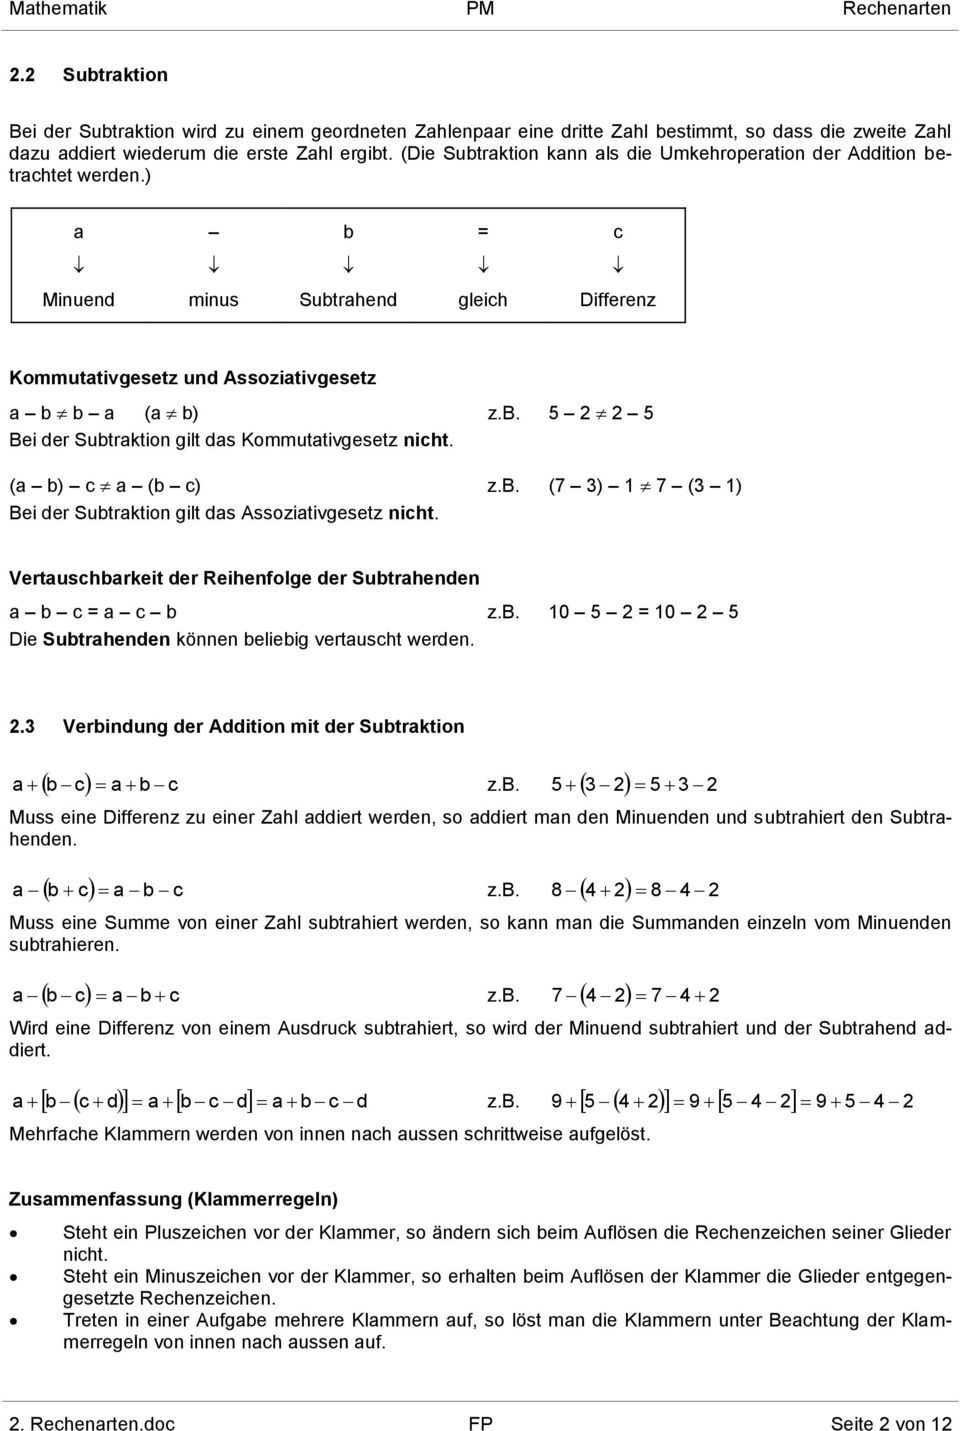 ( b) c (b c) z.b. (7 3) 1 7 (3 1) Bei der Subtrktion gilt ds Assozitivgesetz nicht. Vertuschbrkeit der Reihenfolge der Subtrhenden b c = c b z.b. 10 5 = 10 5 Die Subtrhenden können beliebig vertuscht werden.